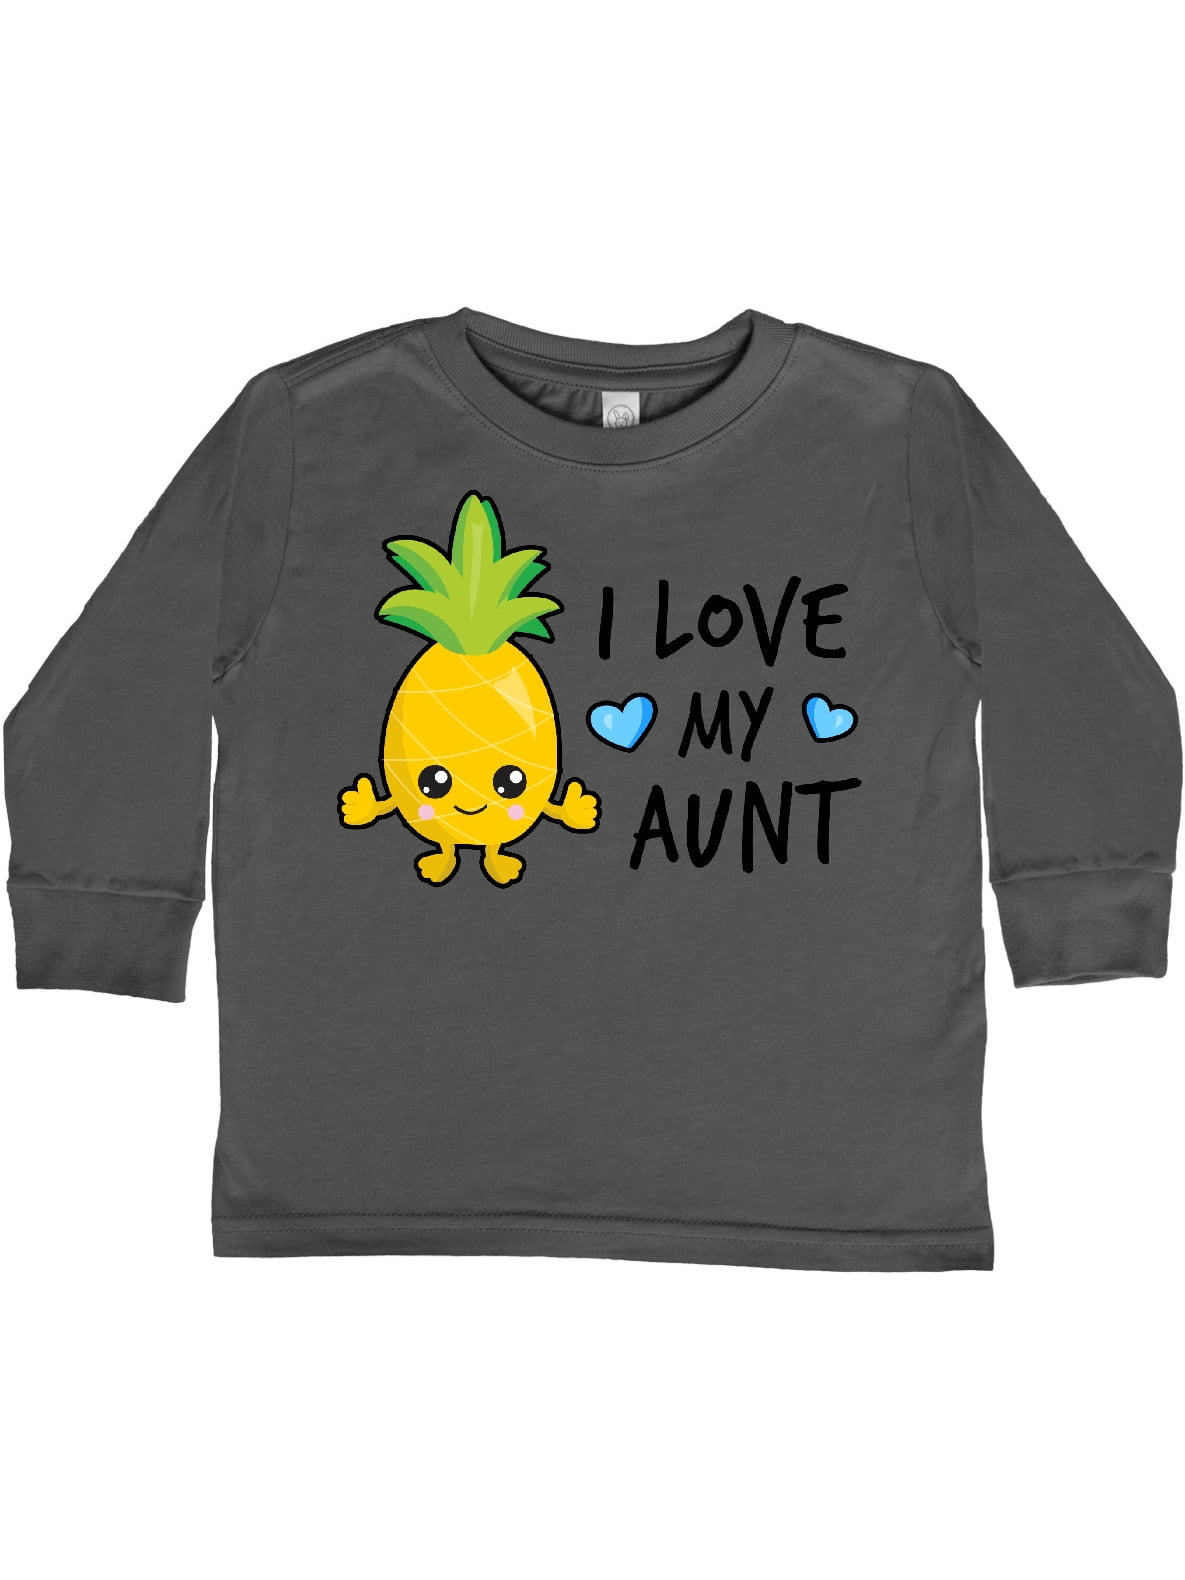 hug a pineapple shirt